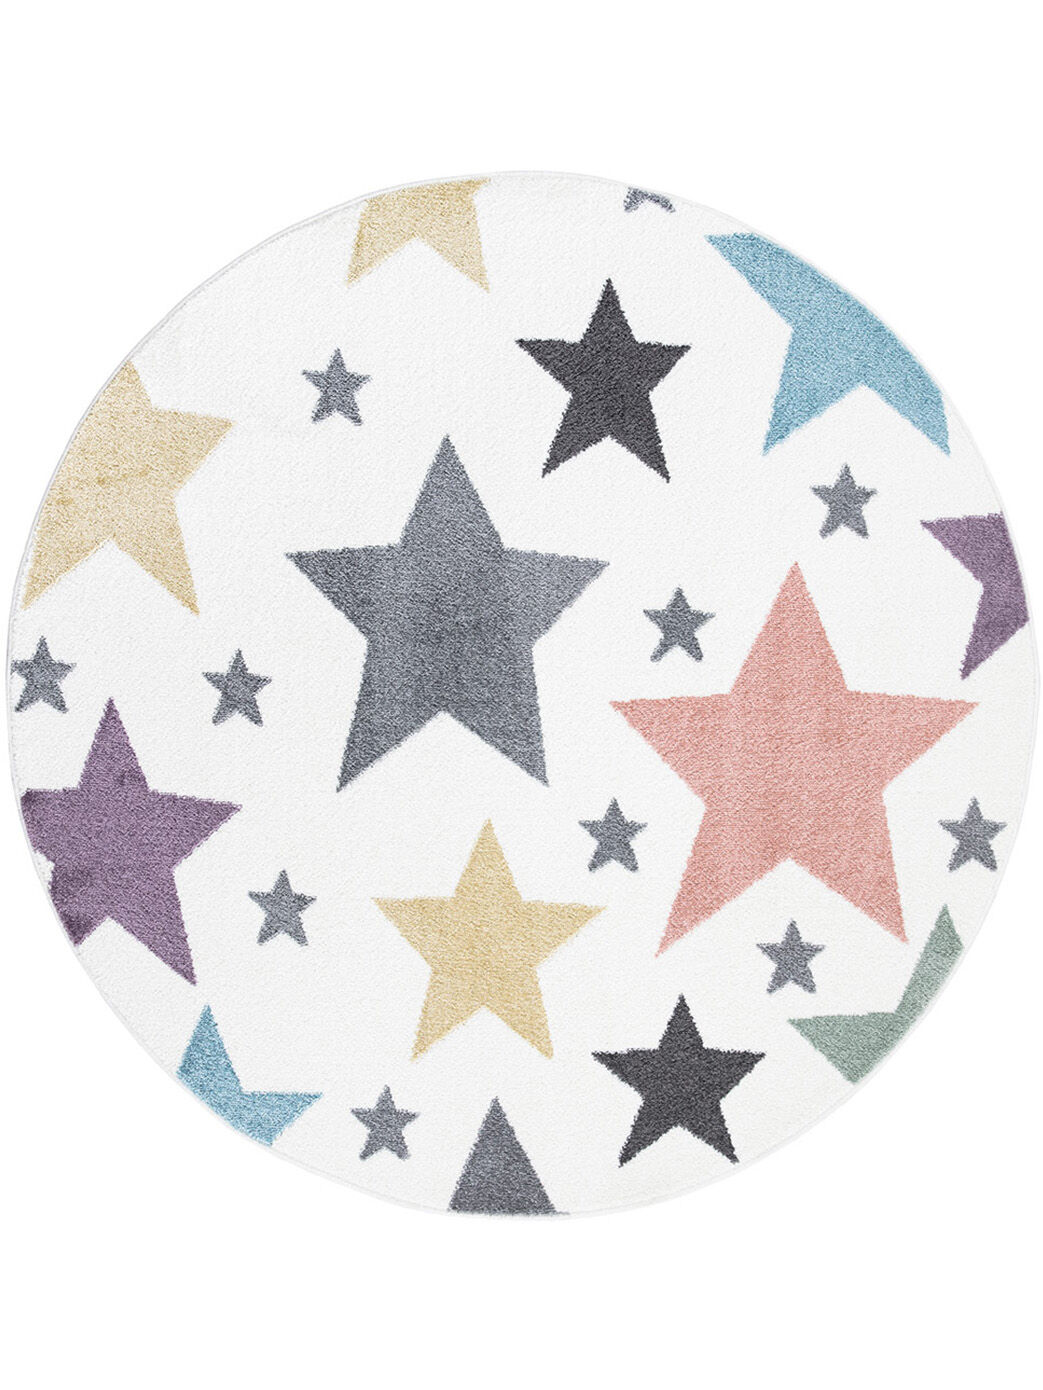 Kinderteppich Sterne Bunt 160x160 1